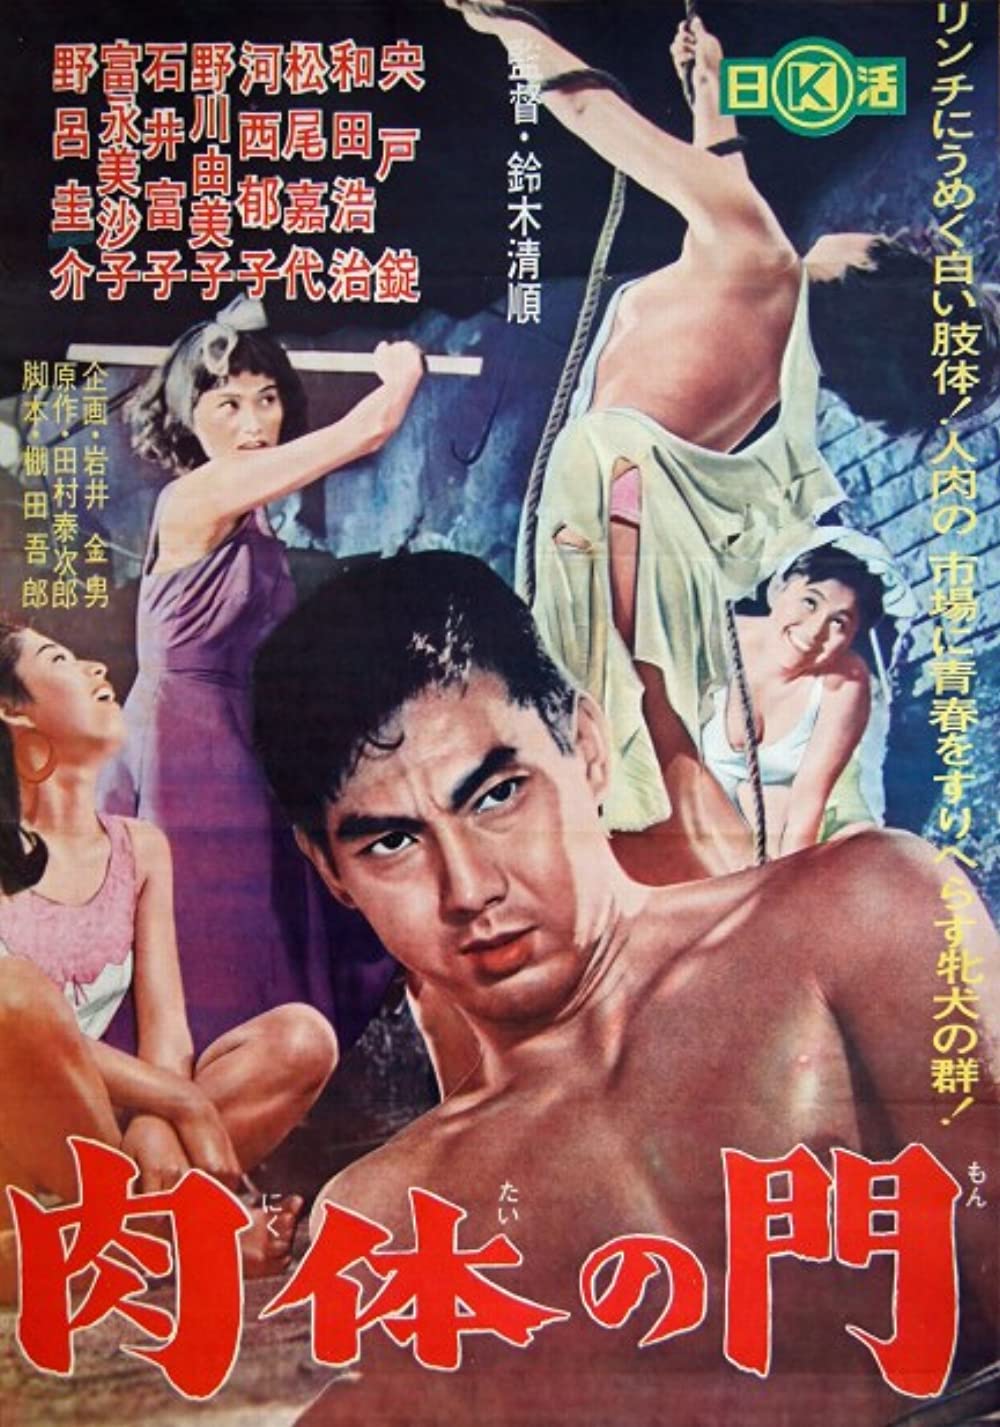 مشاهدة فيلم Gate of Flesh (1964) مترجم